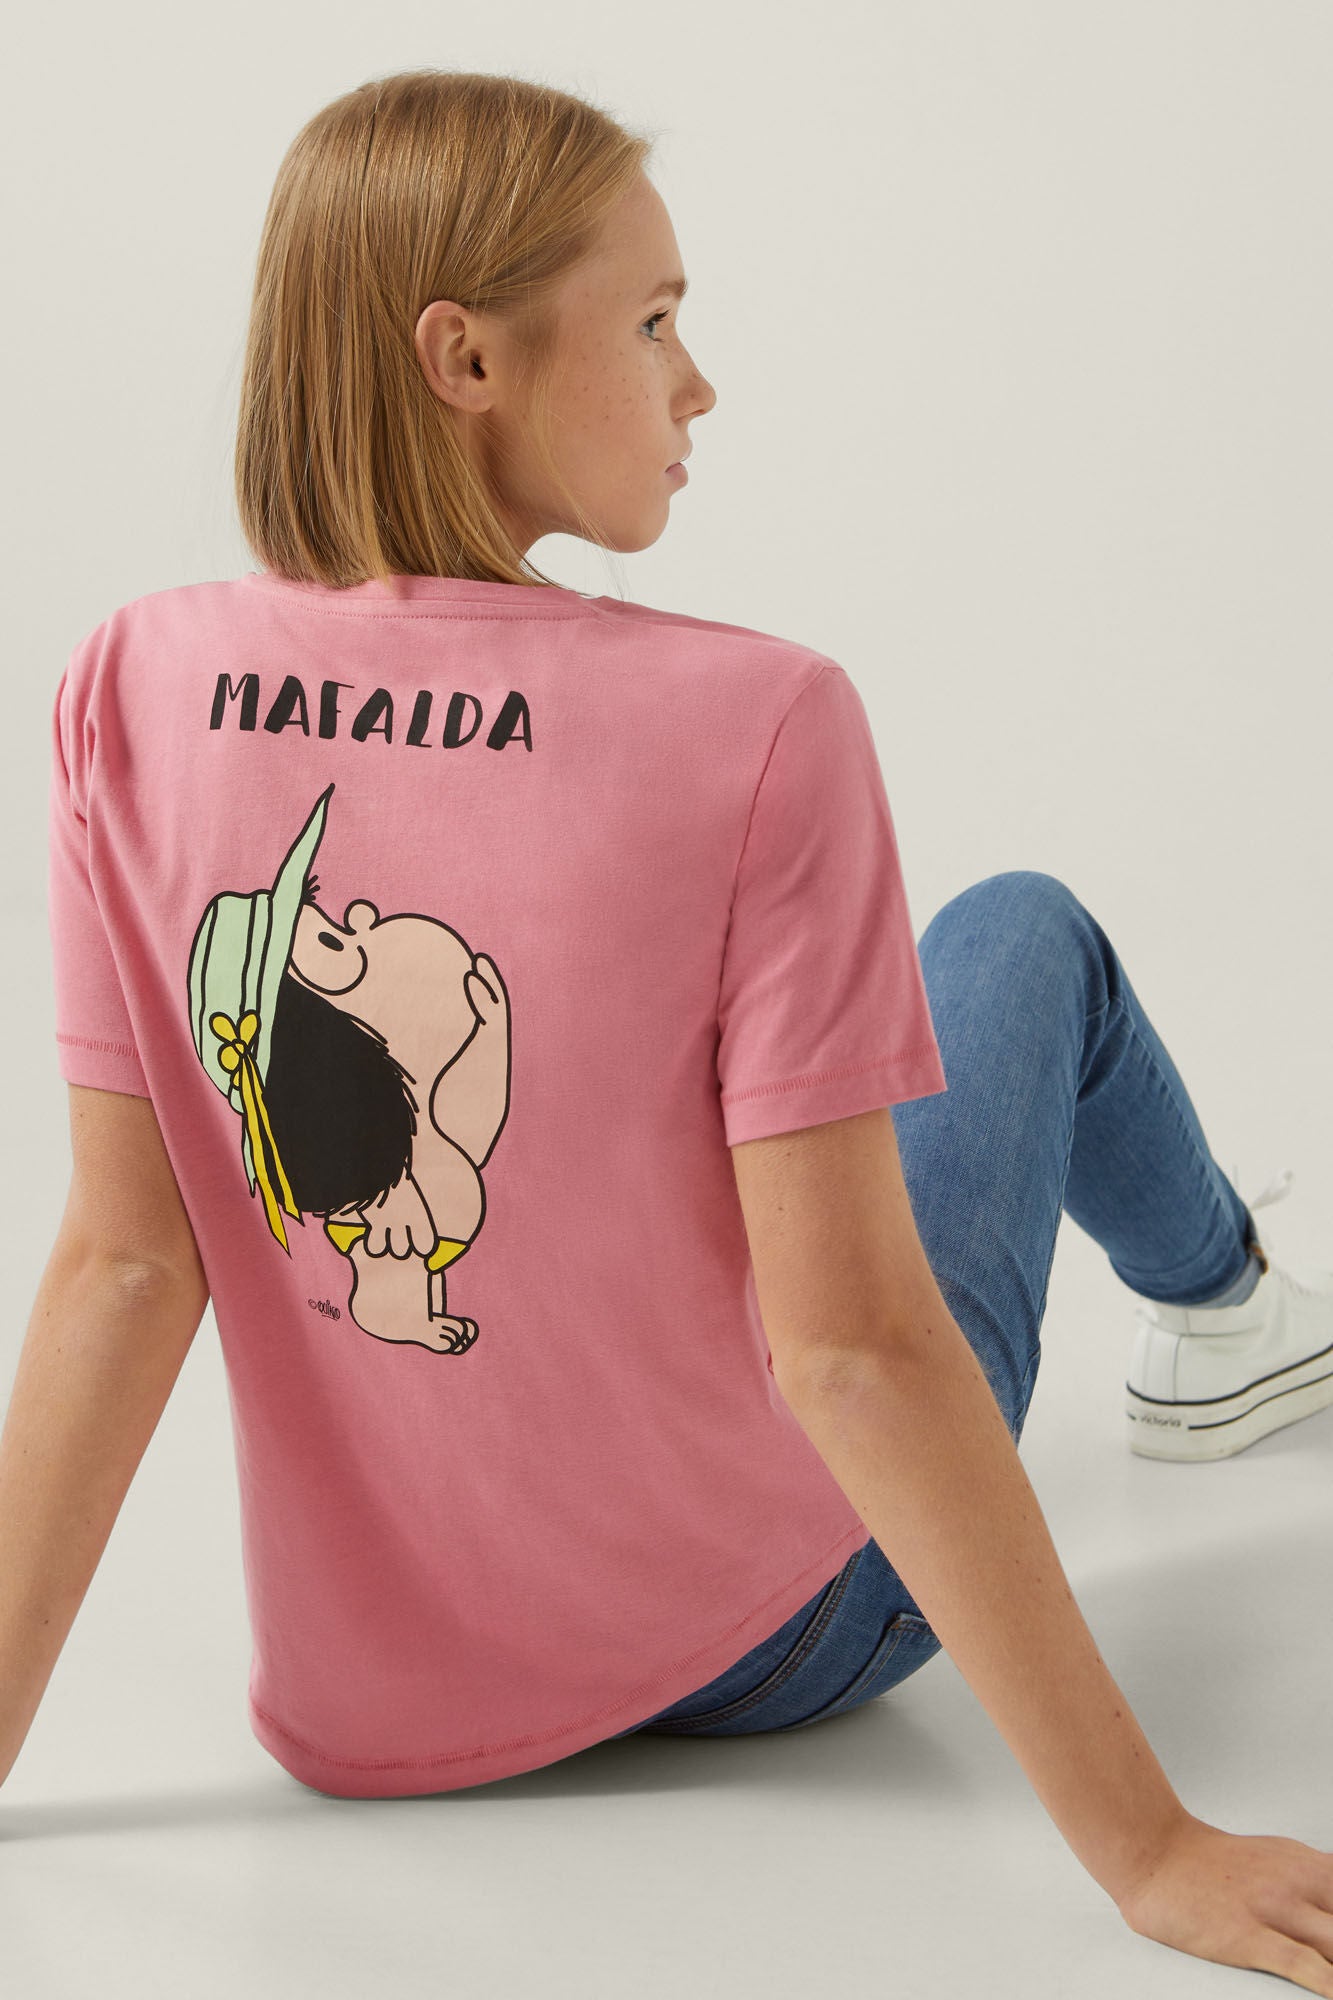 "Mafalda" T-shirt